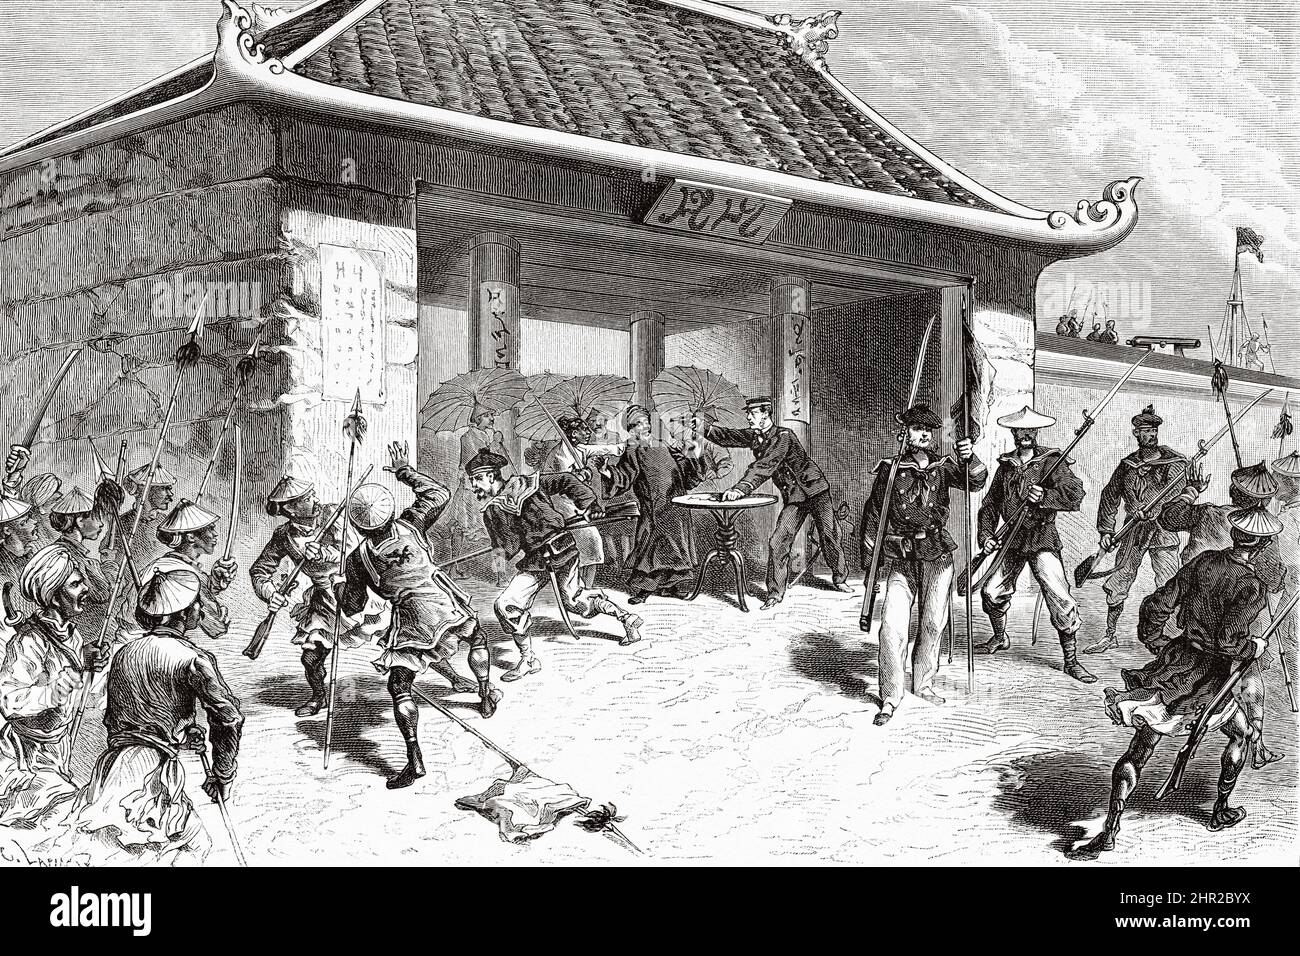 Gefangennahme von Ninh Binh durch Hautefeuille am 5. Dezember 1873, Vietnam. Asien. Eroberung des Tonkin-Deltas durch Romanet de Caillaud Stockfoto